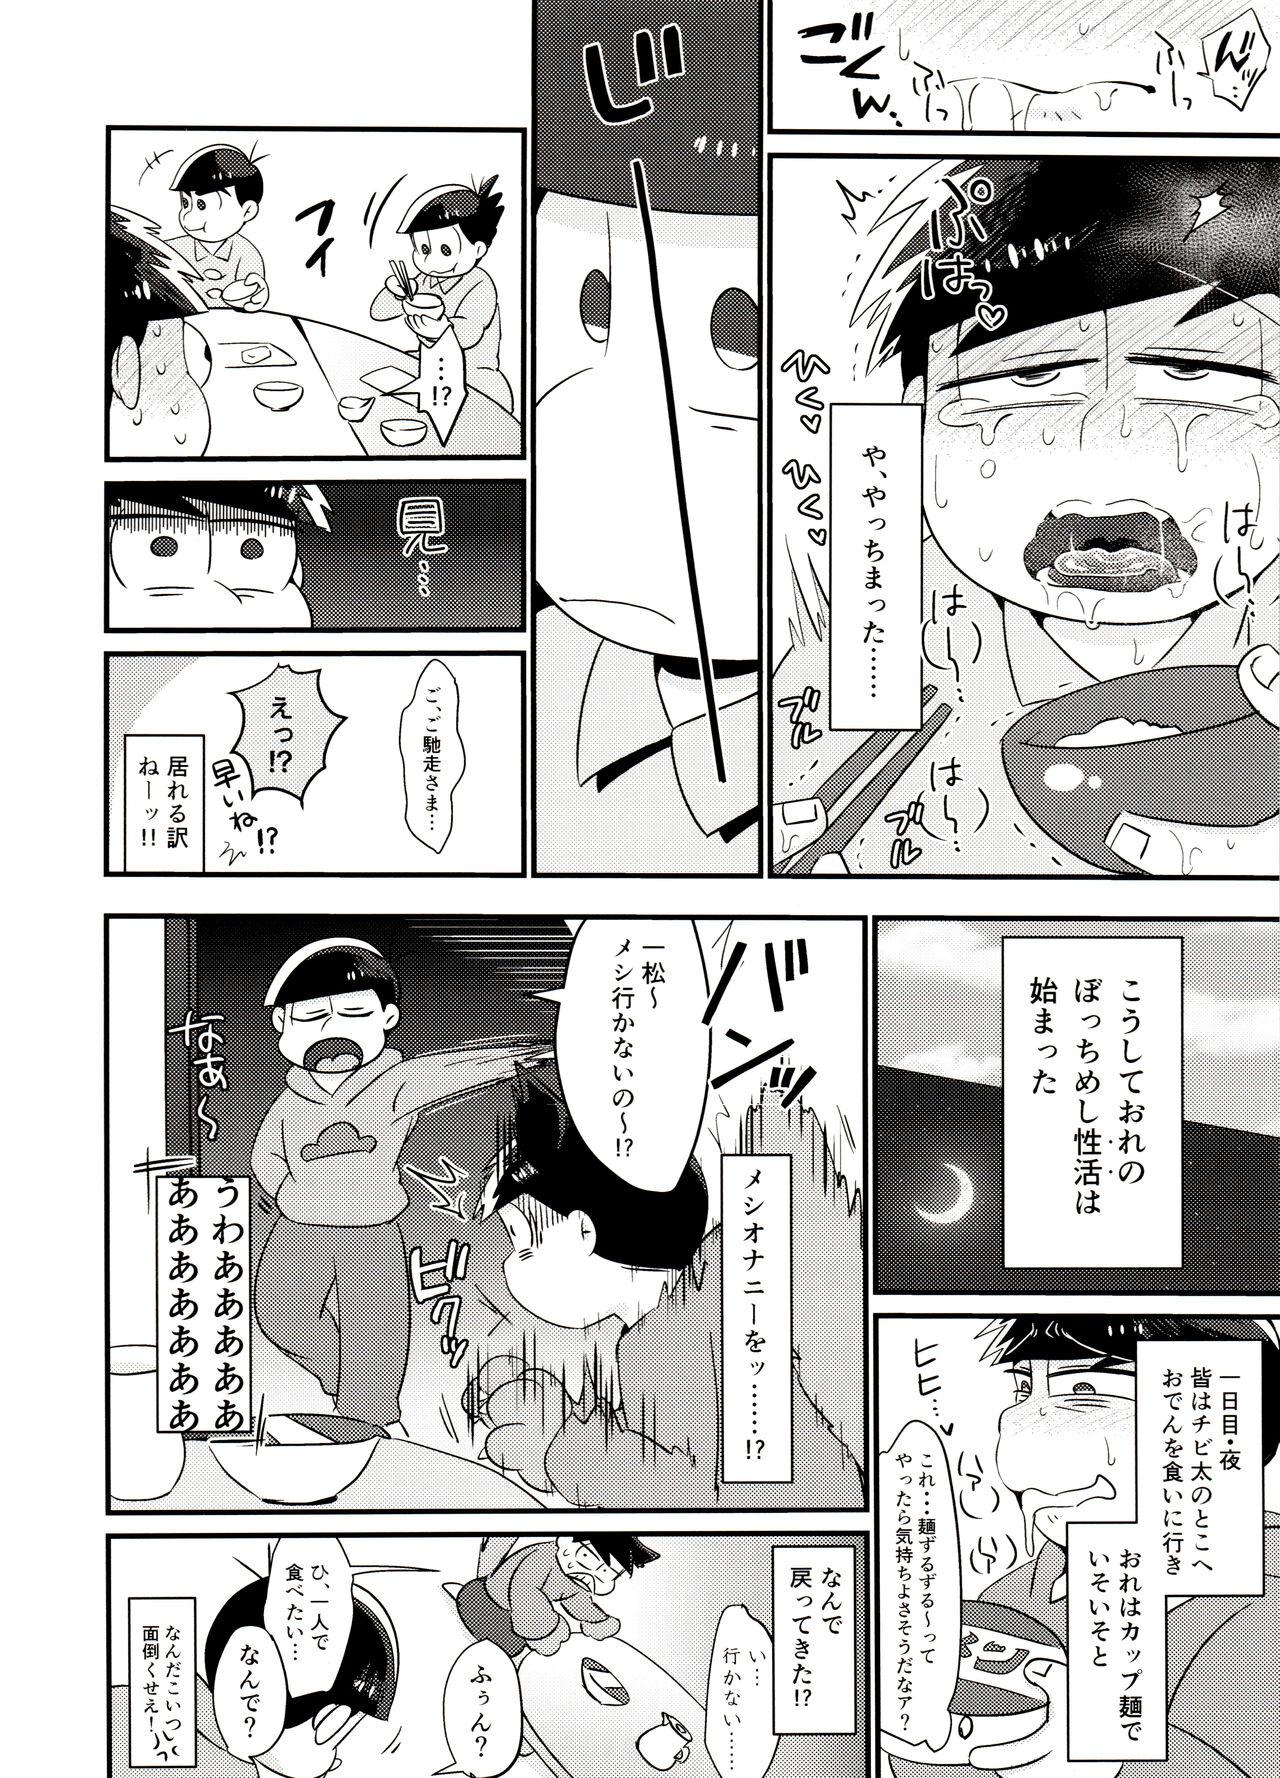 Nylon Ore no shita ga saikin okashī!! - Osomatsu san Full - Page 7